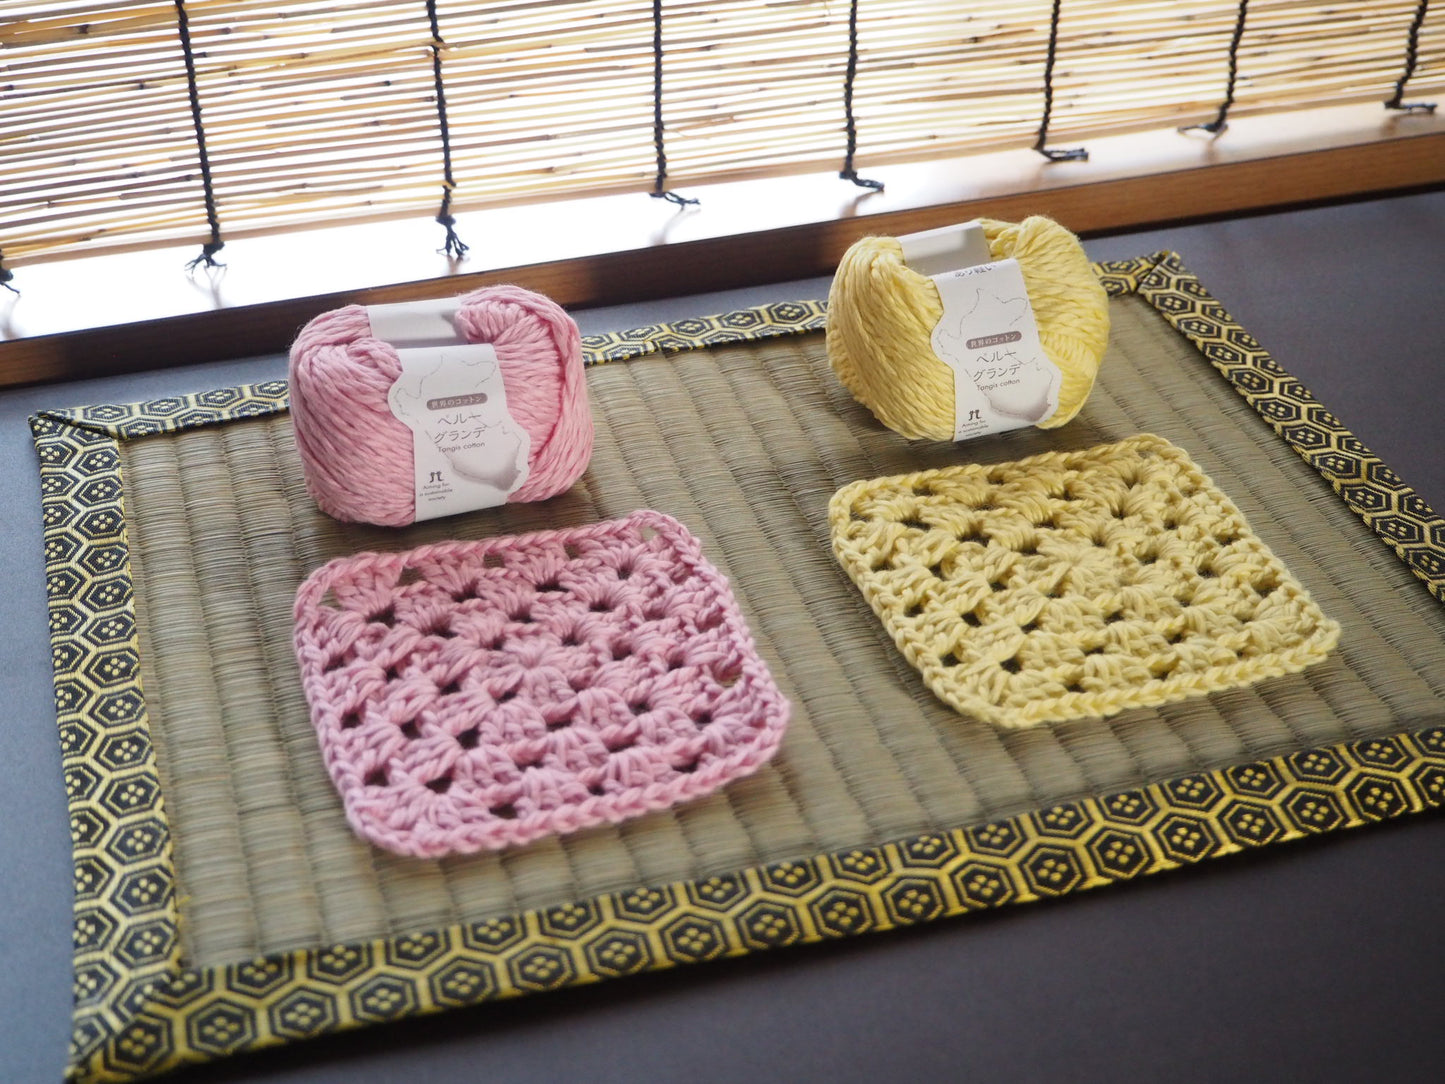 "Enjoy Knitting" as a welfare item as a gift